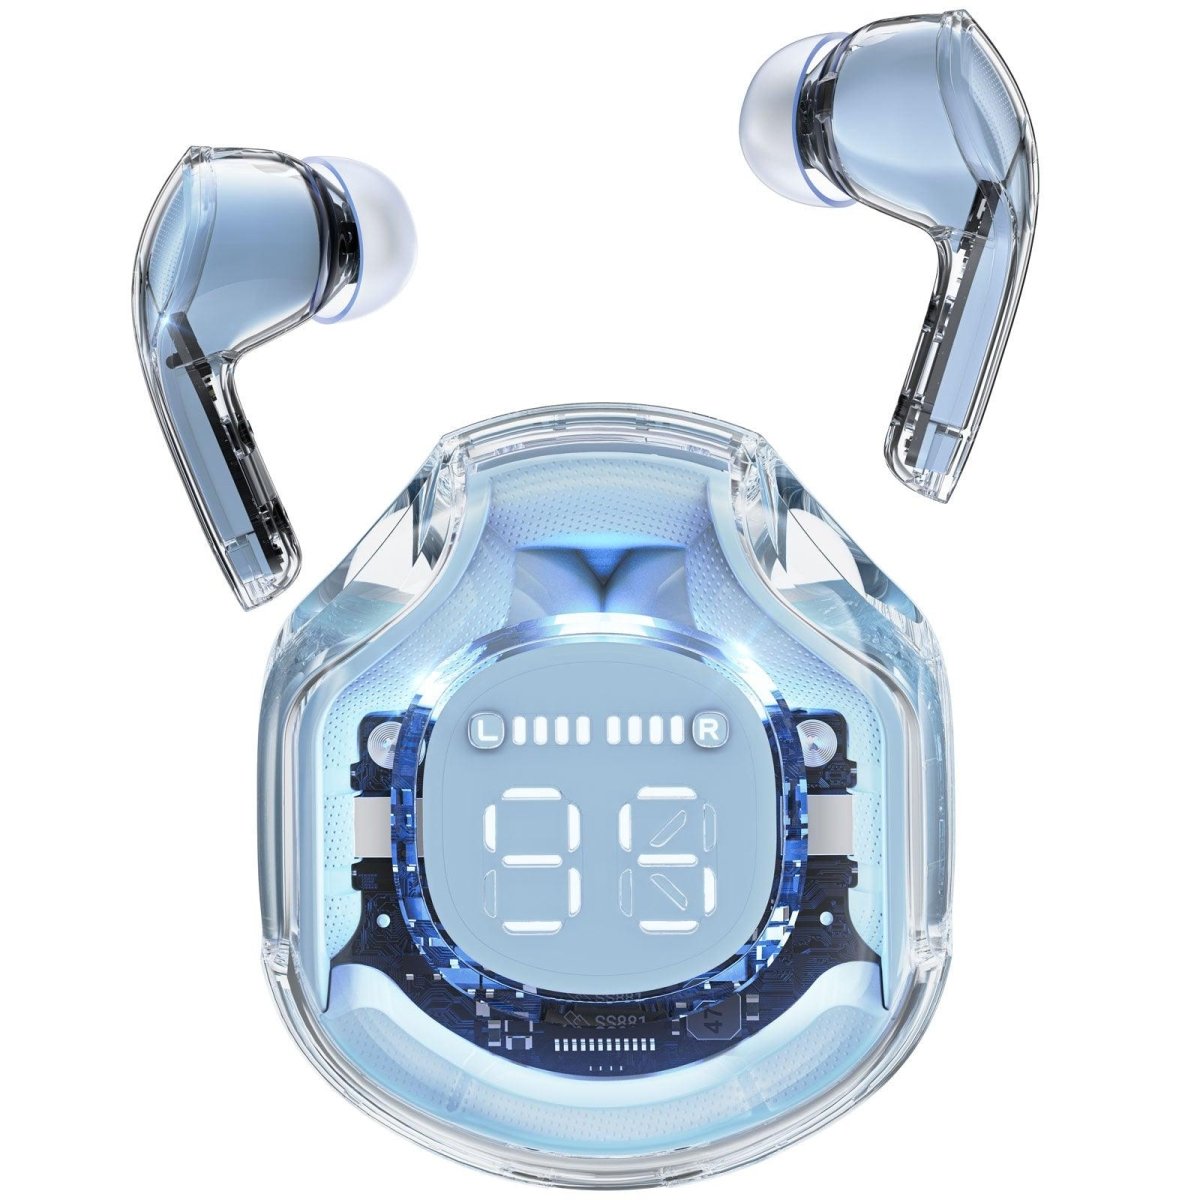 T8 冰蓝色ACEFASTACEFAST Crystal (2) Earbuds T8 - ACEFASTT8 冰蓝色